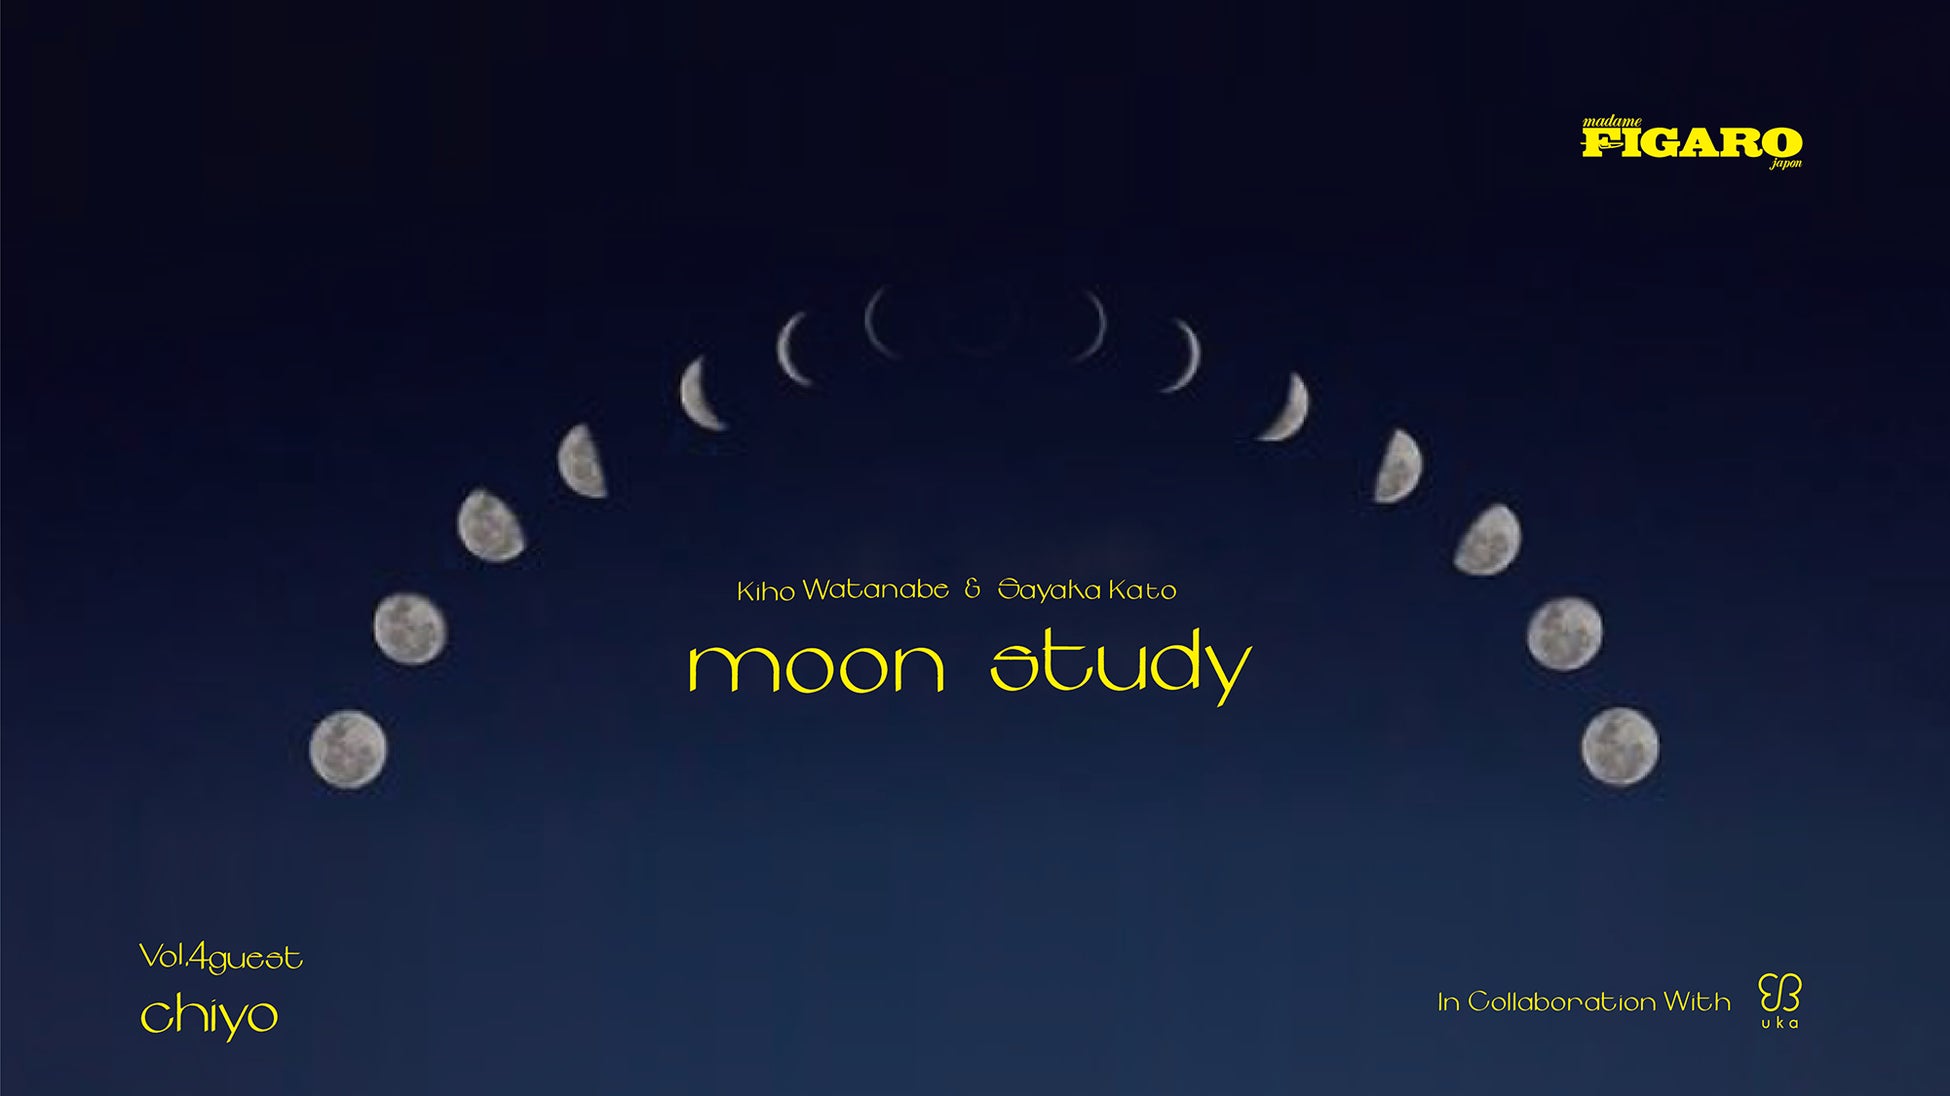 新月の夜はフィガロジャポンとukaのインスタライブ「moon study」。3月3日(木)となるvol.4はスペシャルゲストに月詠み調香師のchiyo氏が登場します！みんなで月のお勉強をしませんか。